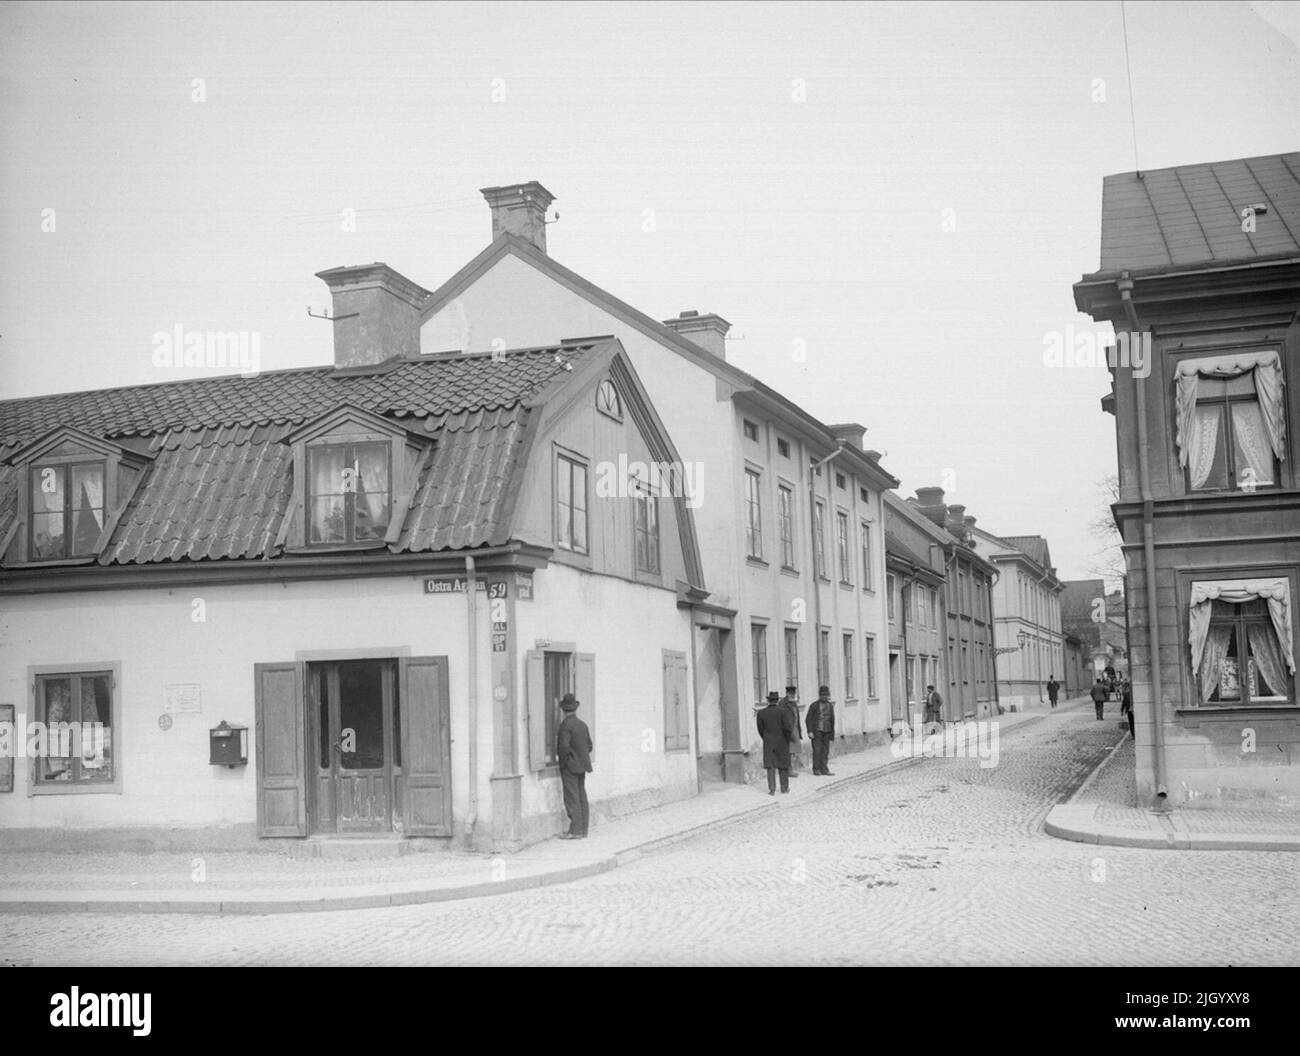 Il vicolo del castoro verso il nord-est di Östra Ågatan, Uppsala 1901 - 1902. Bävernsgränd verso il nord-est di Östra Ågatan. All'angolo del vicolo di Östra Ågatan e di Bävern, a sinistra si trova il vecchio pub comunemente chiamato sette inni, noto, tra l'altro, attraverso il Gluntar di Gunnar Wennerberg. Si parla del famigerato pub al Ponte islandese con le sette brutte estensioni e la sua natura diabolica sotto il tetto. Le sette coppe del tetto che la casa aveva verso Östra Ågatan hanno causato una discussione già quando sono state aggiunte nel 1816. La città fiscale considerato, ad esempio, questo Foto Stock